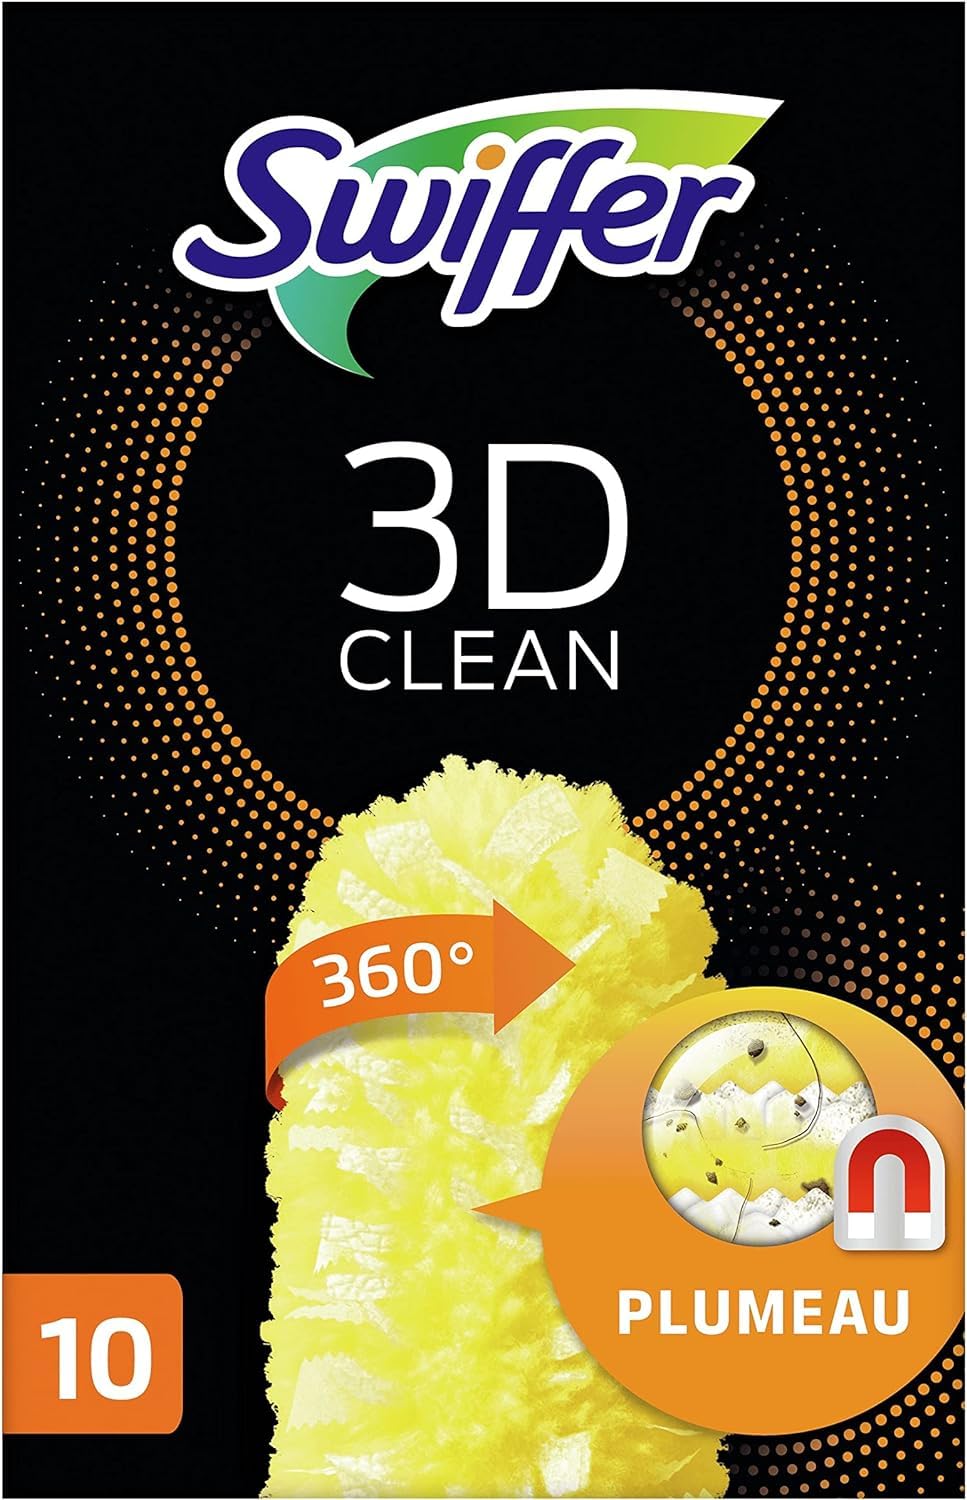 pas cher Swiffer Duster Plumeau Nettoyage 3D 360, Attrape Et Retient La Poussière, Recharges, 10 Unités ElJNwobFR bien vendre